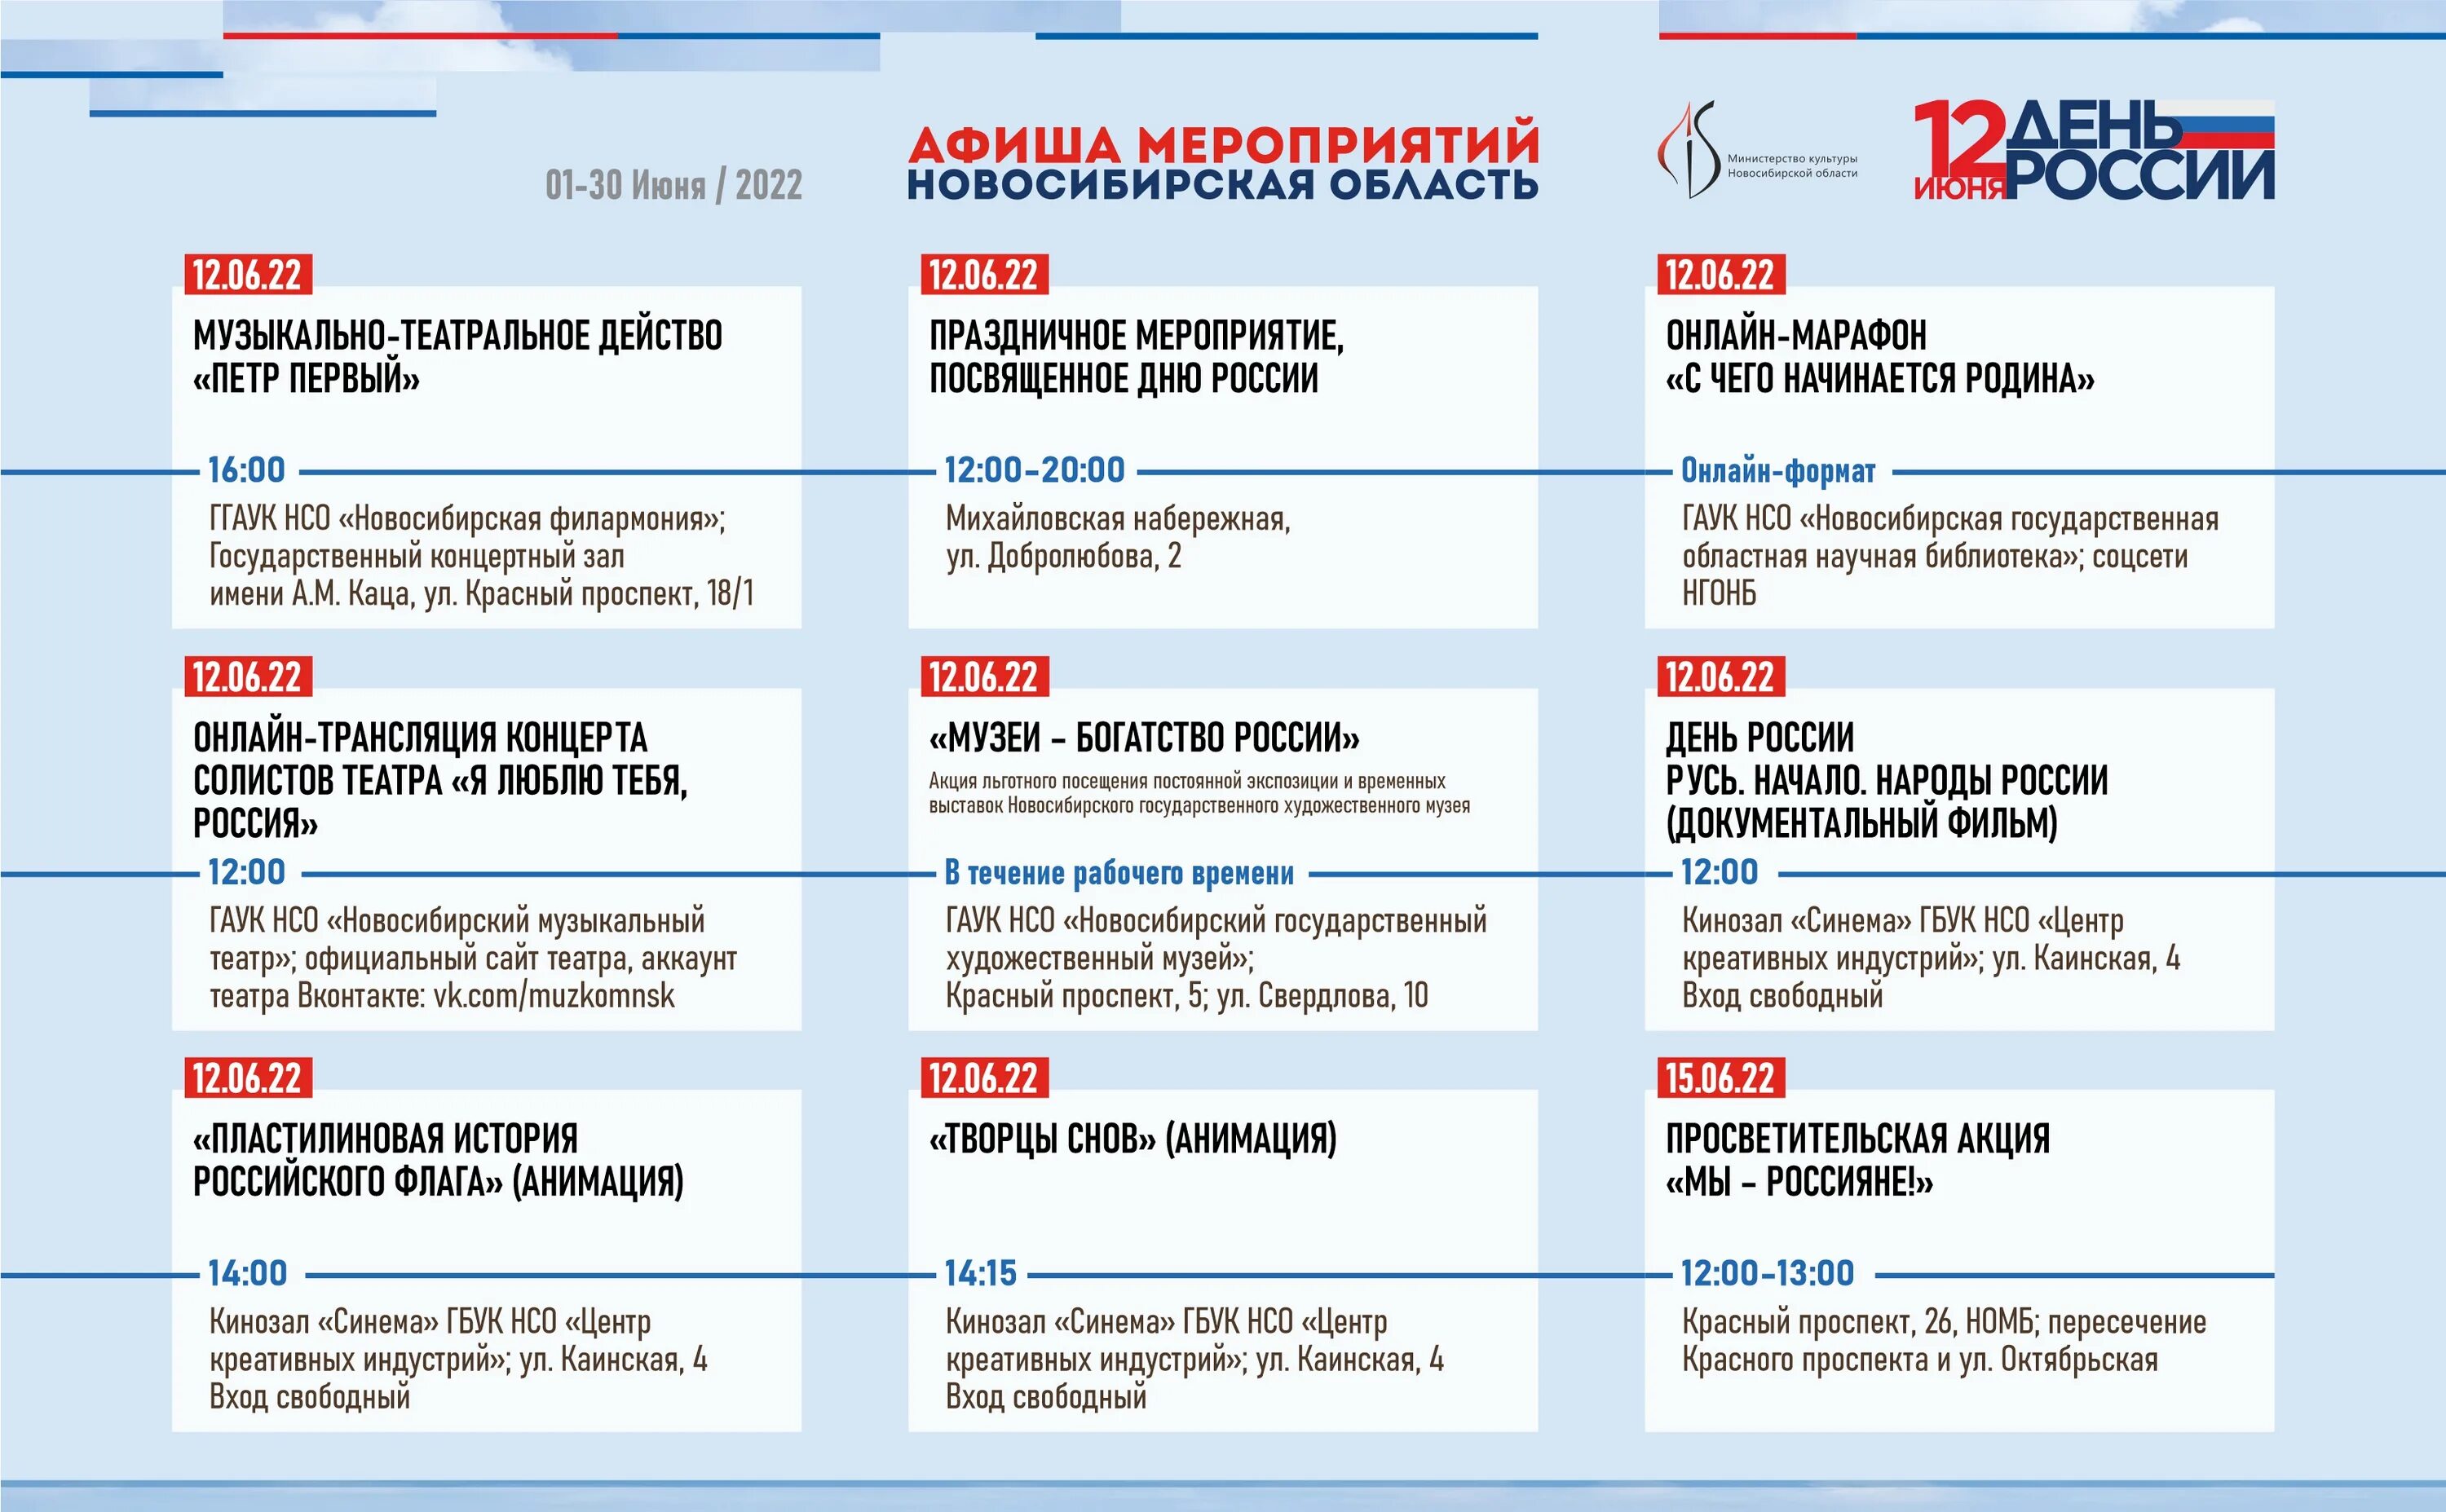 12 июня программы. Программа мероприятия. День России 2022 мероприятия. Программа мероприятия дизайн.